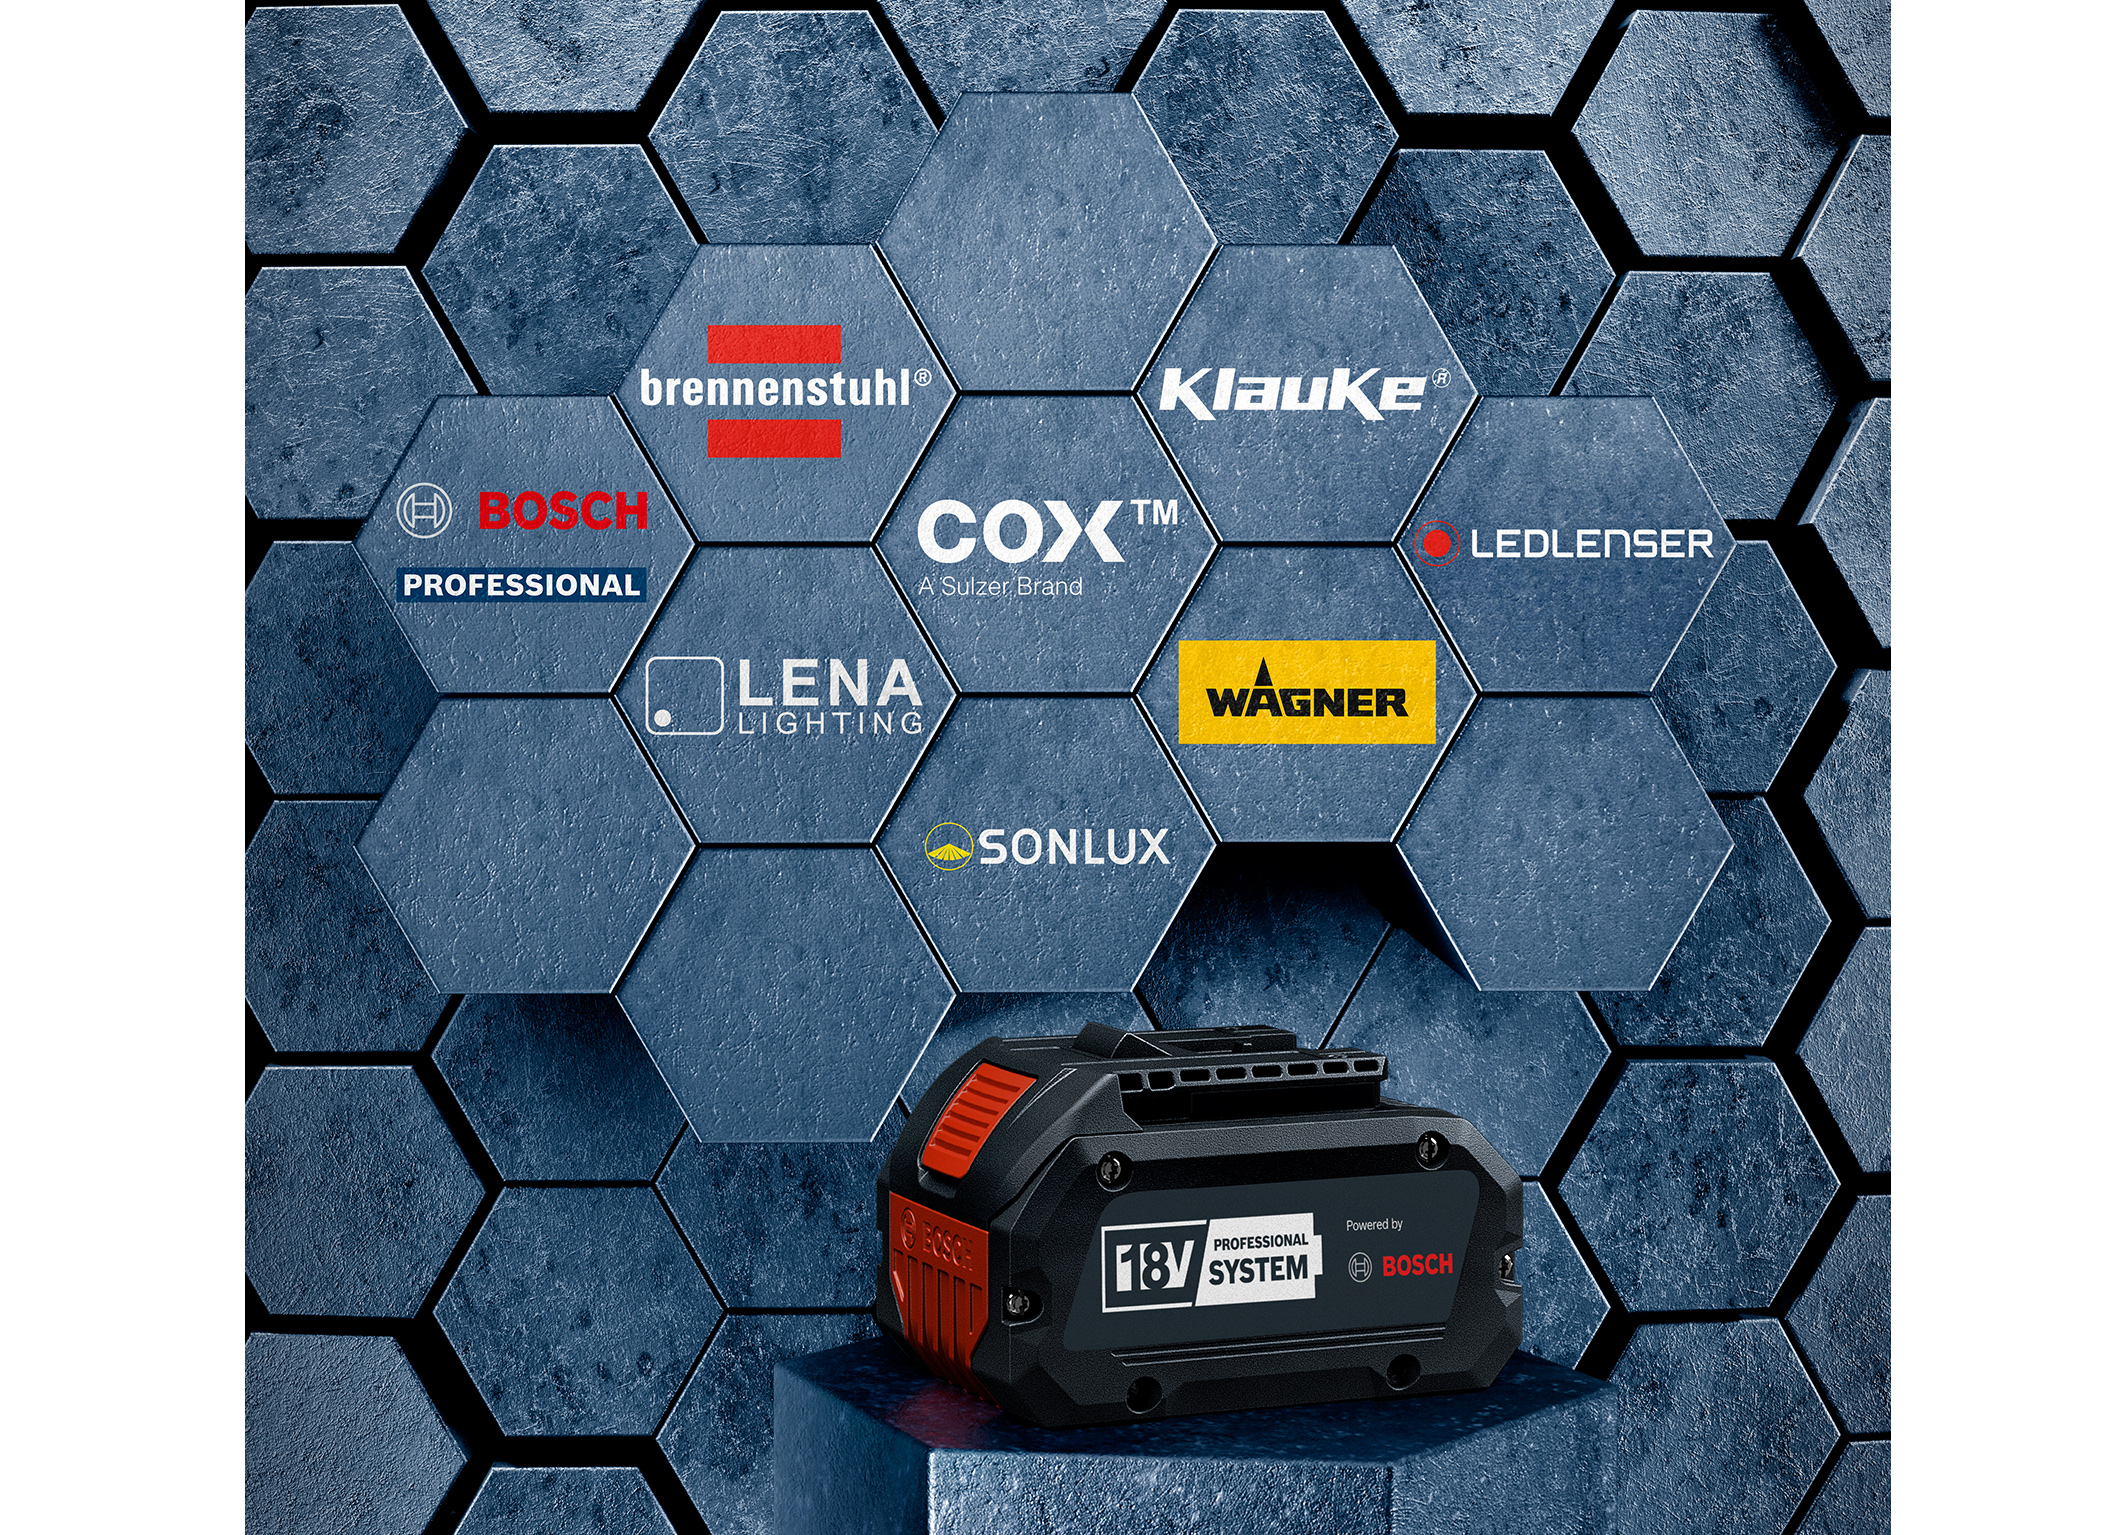 Zvýšení efektivity pro profesionální uživatele: Bosch otevírá profesionální 18V systém pro odborné značky